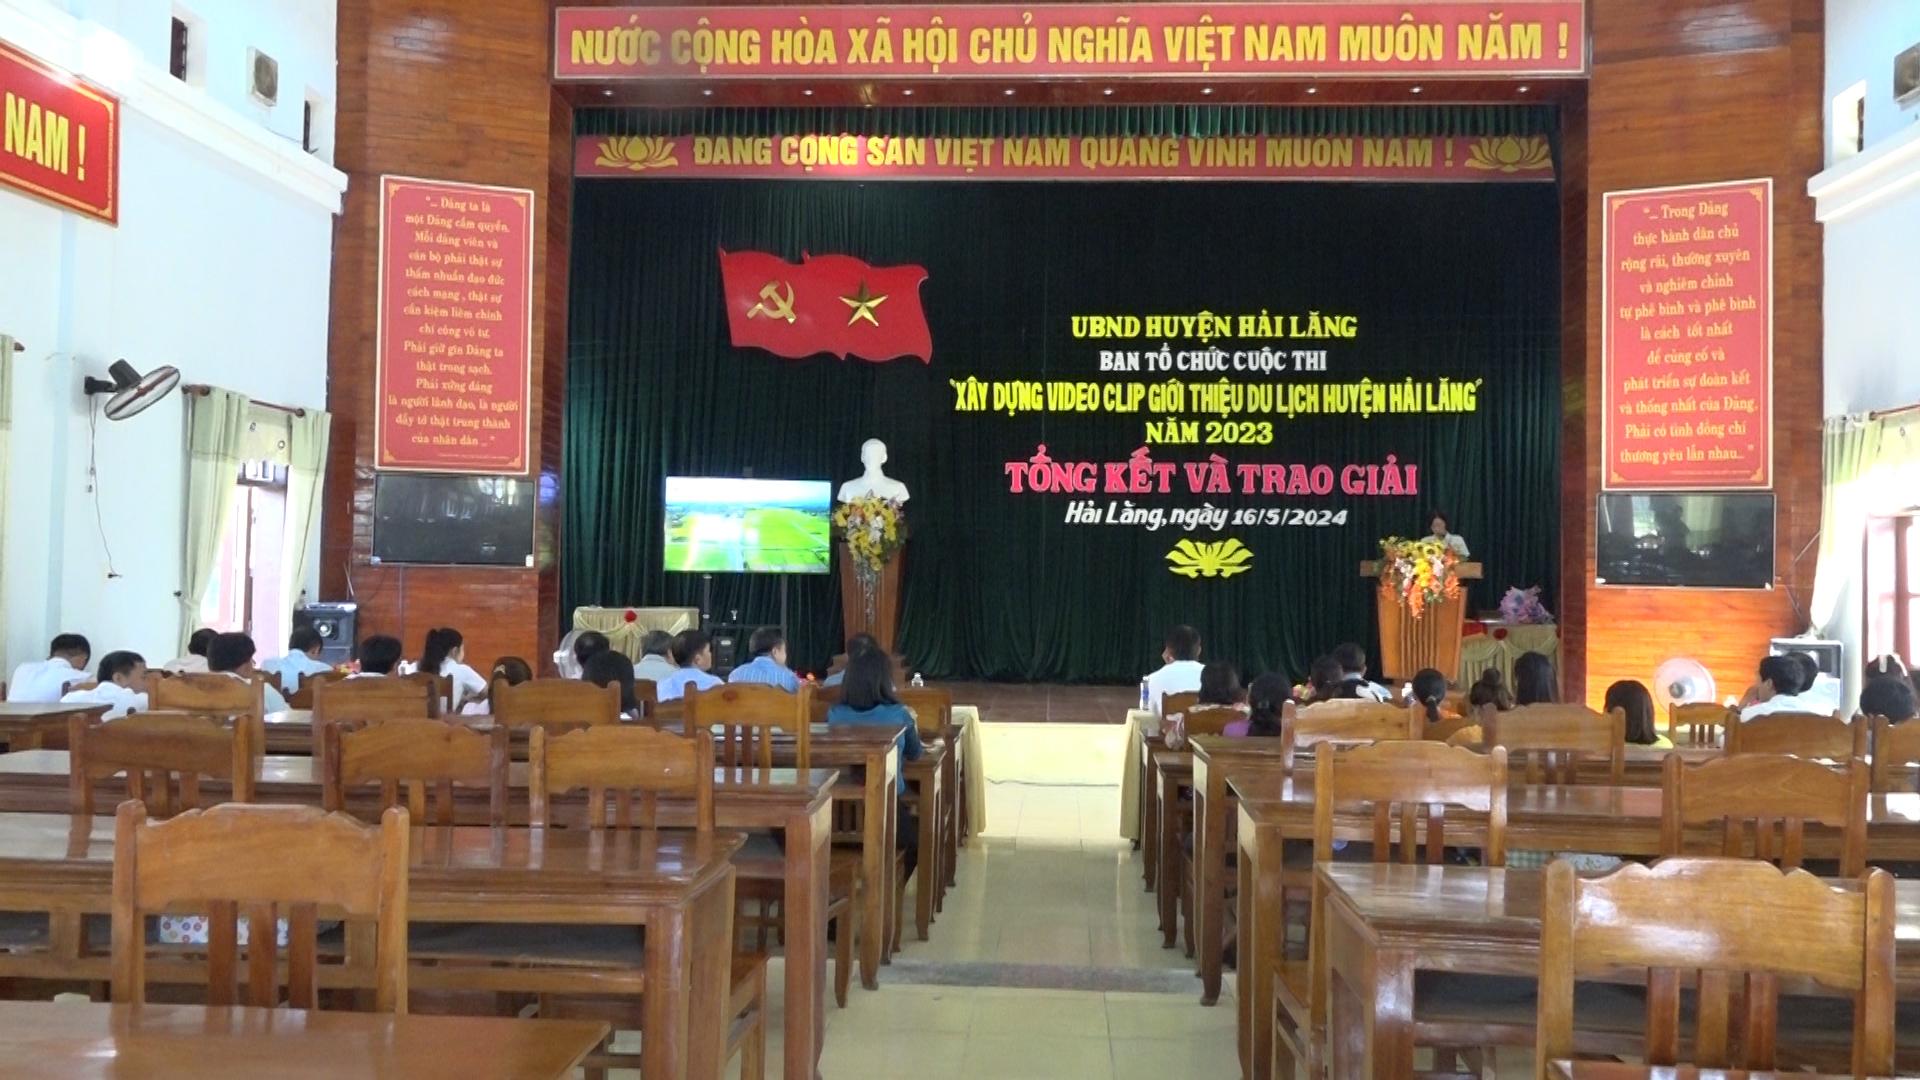 Tổng kết và trao giải cuộc thi “Xây dựng video clip giới thiệu du lịch huyện Hải Lăng”